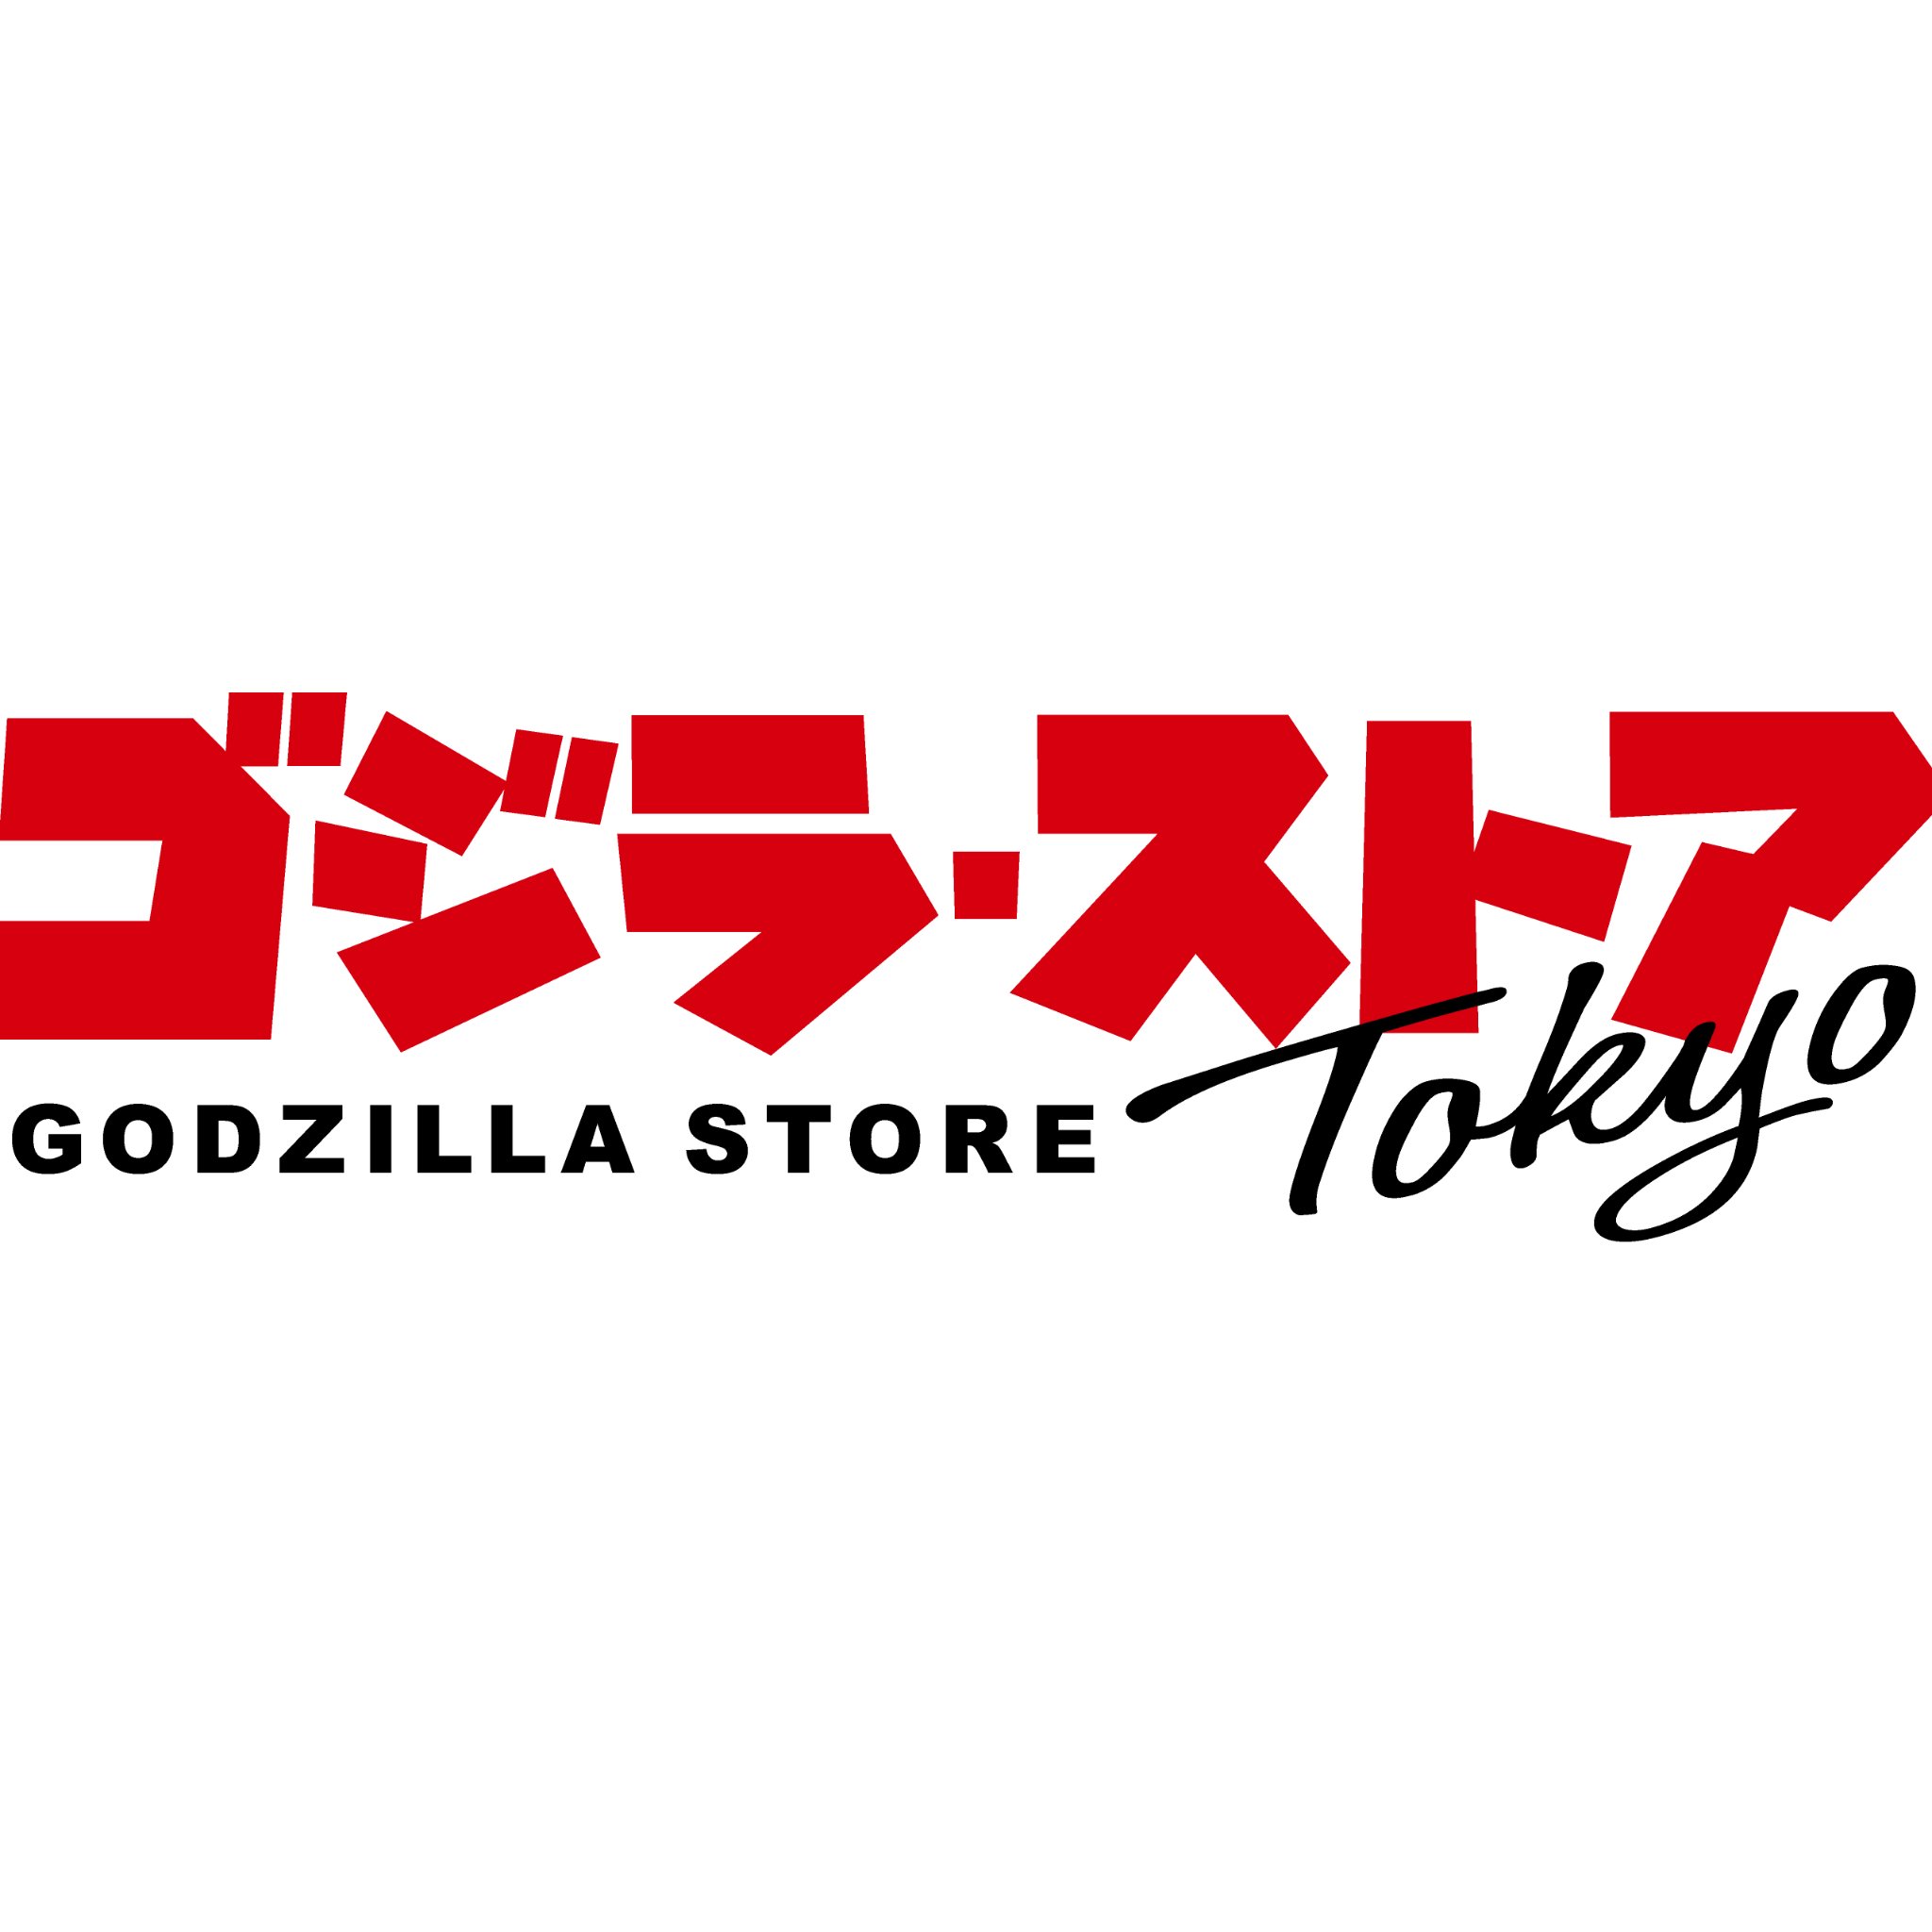 2017.10.30[mon]オープン！ ゴジラオフィシャルグッズショップ「ゴジラ・ストア Tokyo」の公式アカウントです。